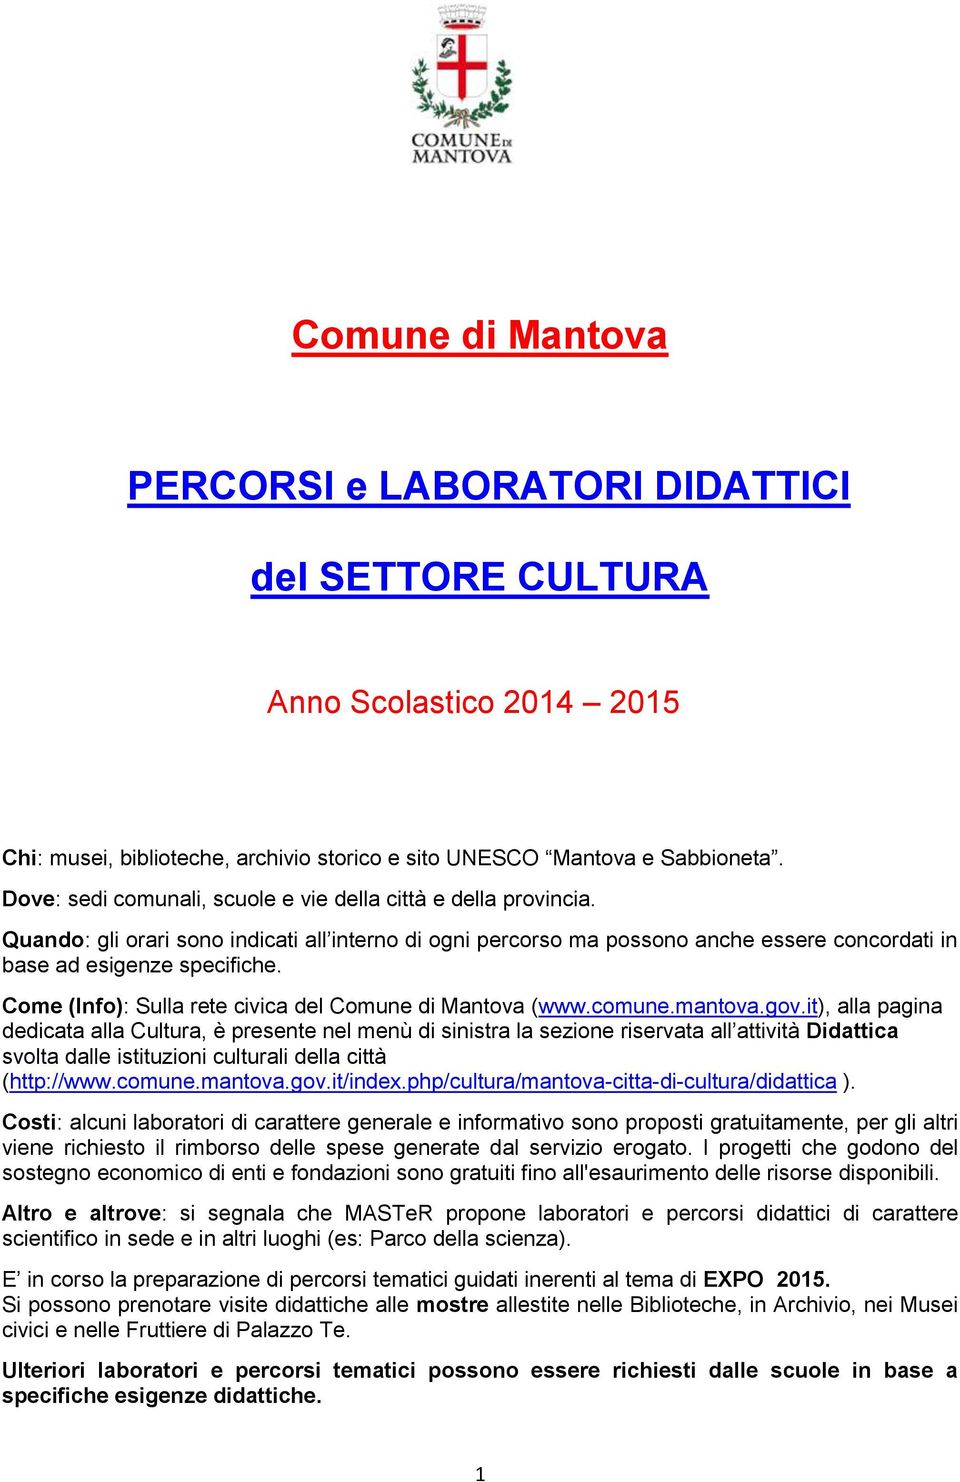 Come (Info): Sulla rete civica del Comune di Mantova (www.comune.mantova.gov.